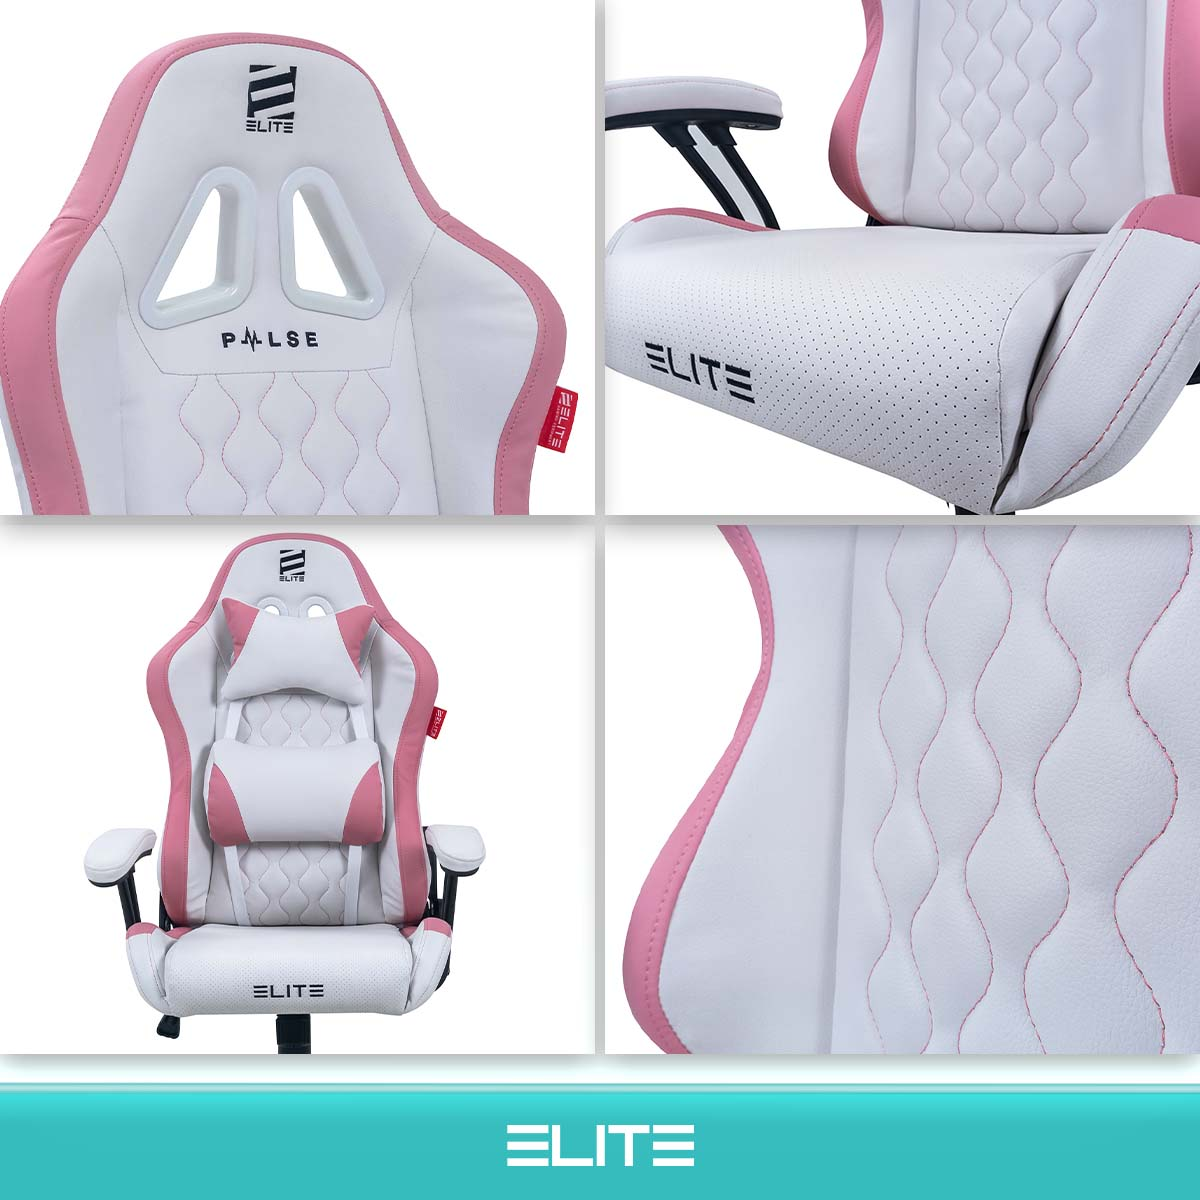 ELITE PULSE Gaming Stuhl, Weiß/Pink